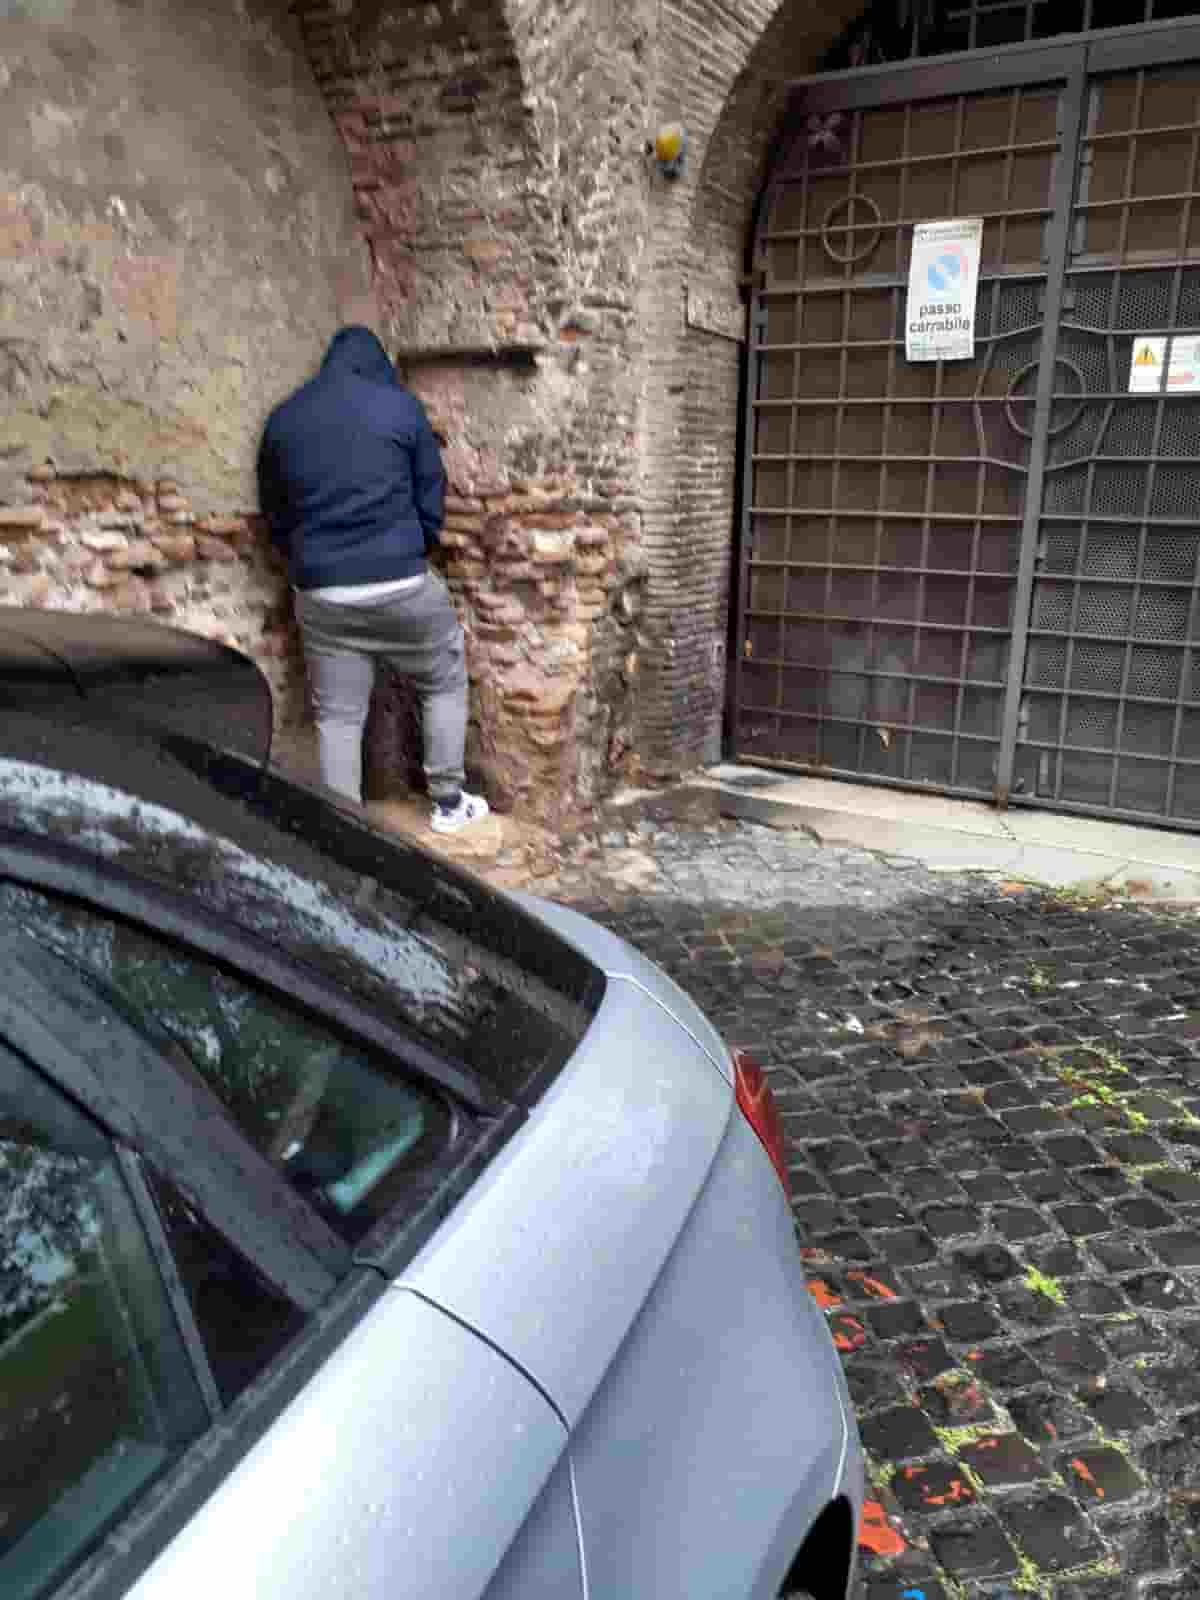 Roma pulita? Foto simbolo del buoco corso di Gualtieri sindaco: giovane la fa davanti a un portone in pieno giorno